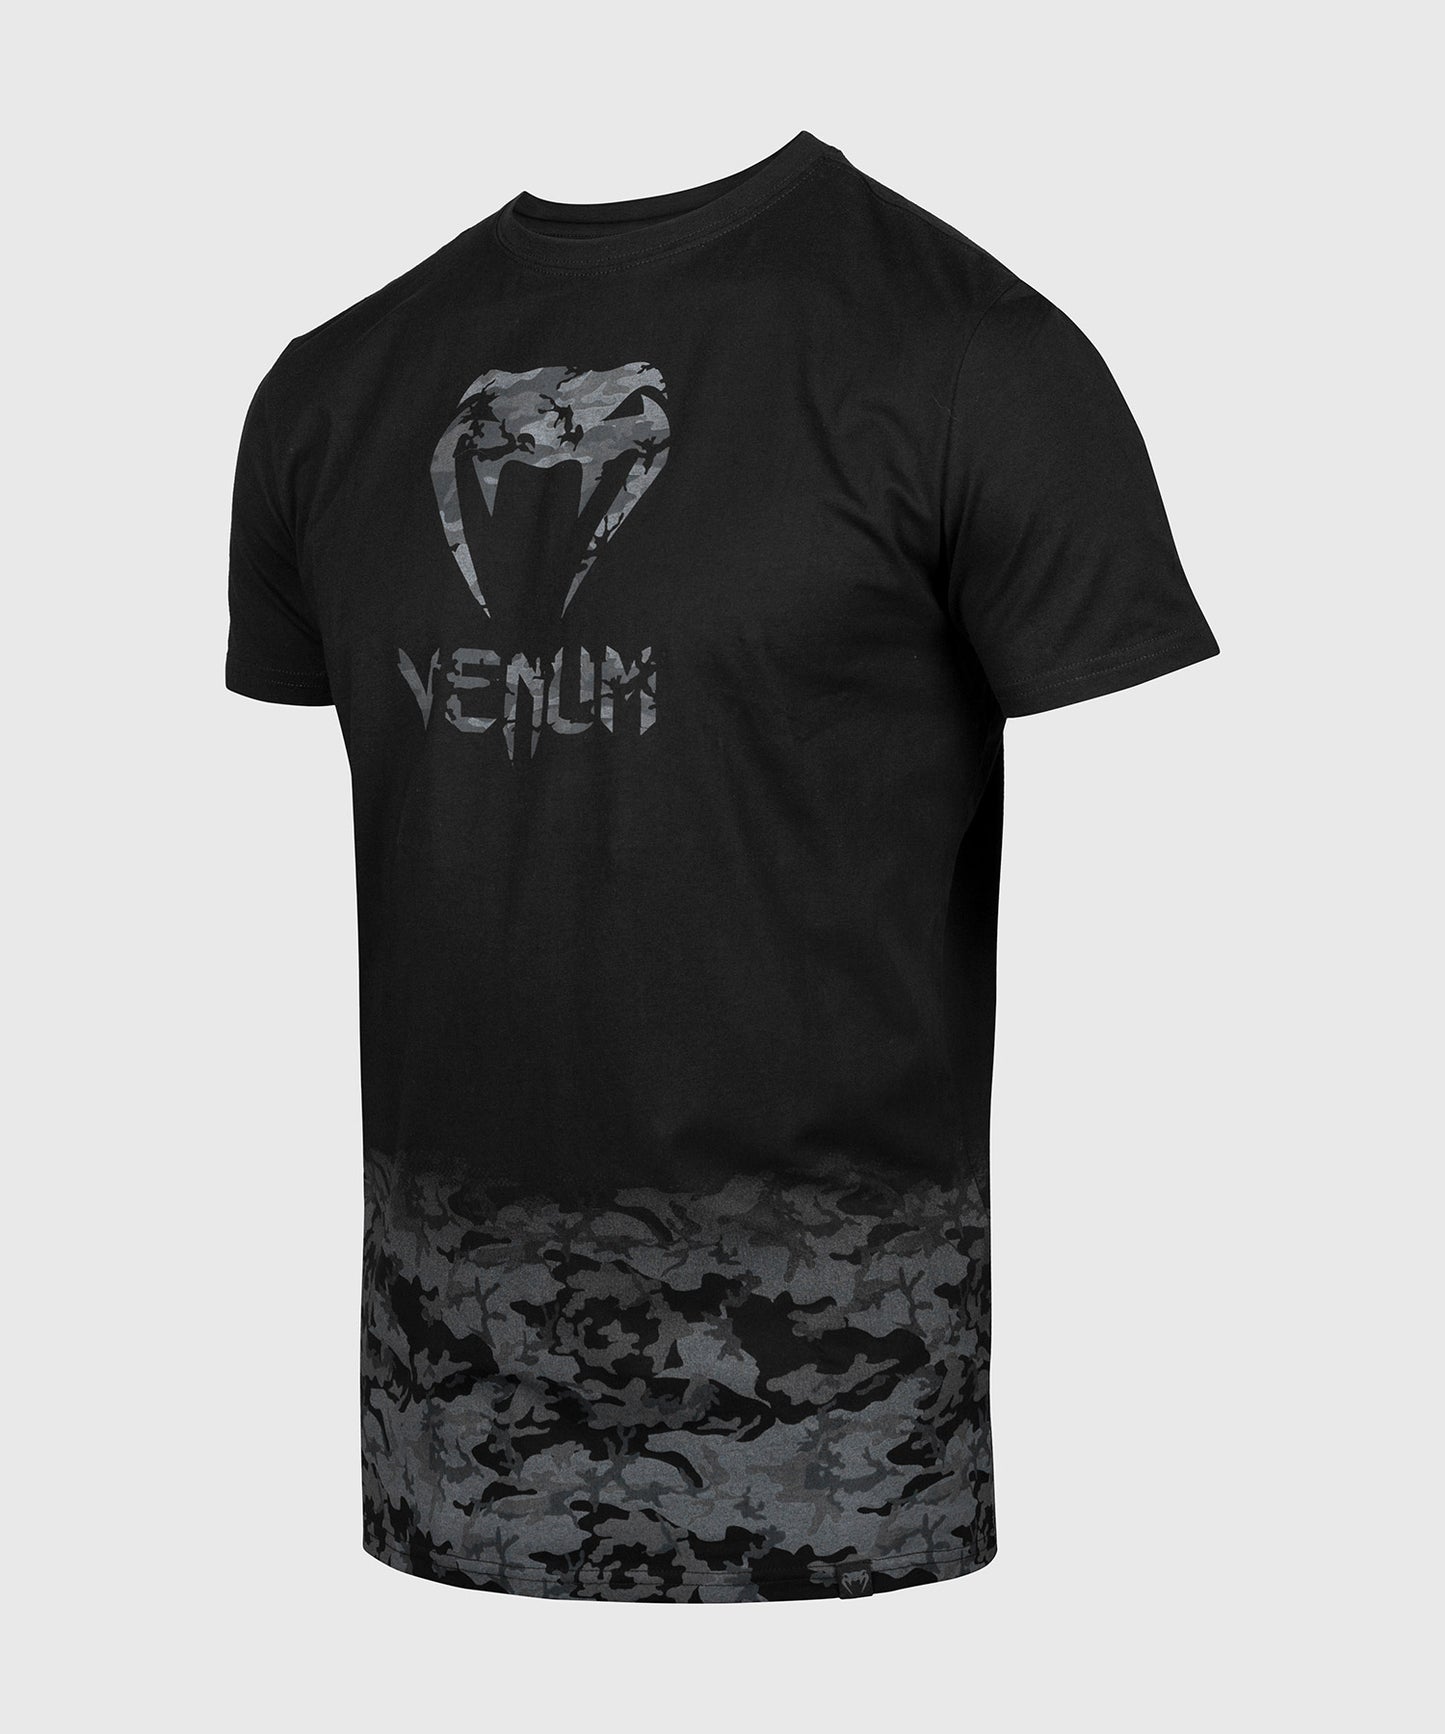 T-shirt Classic Venum - Nero/Camo urban